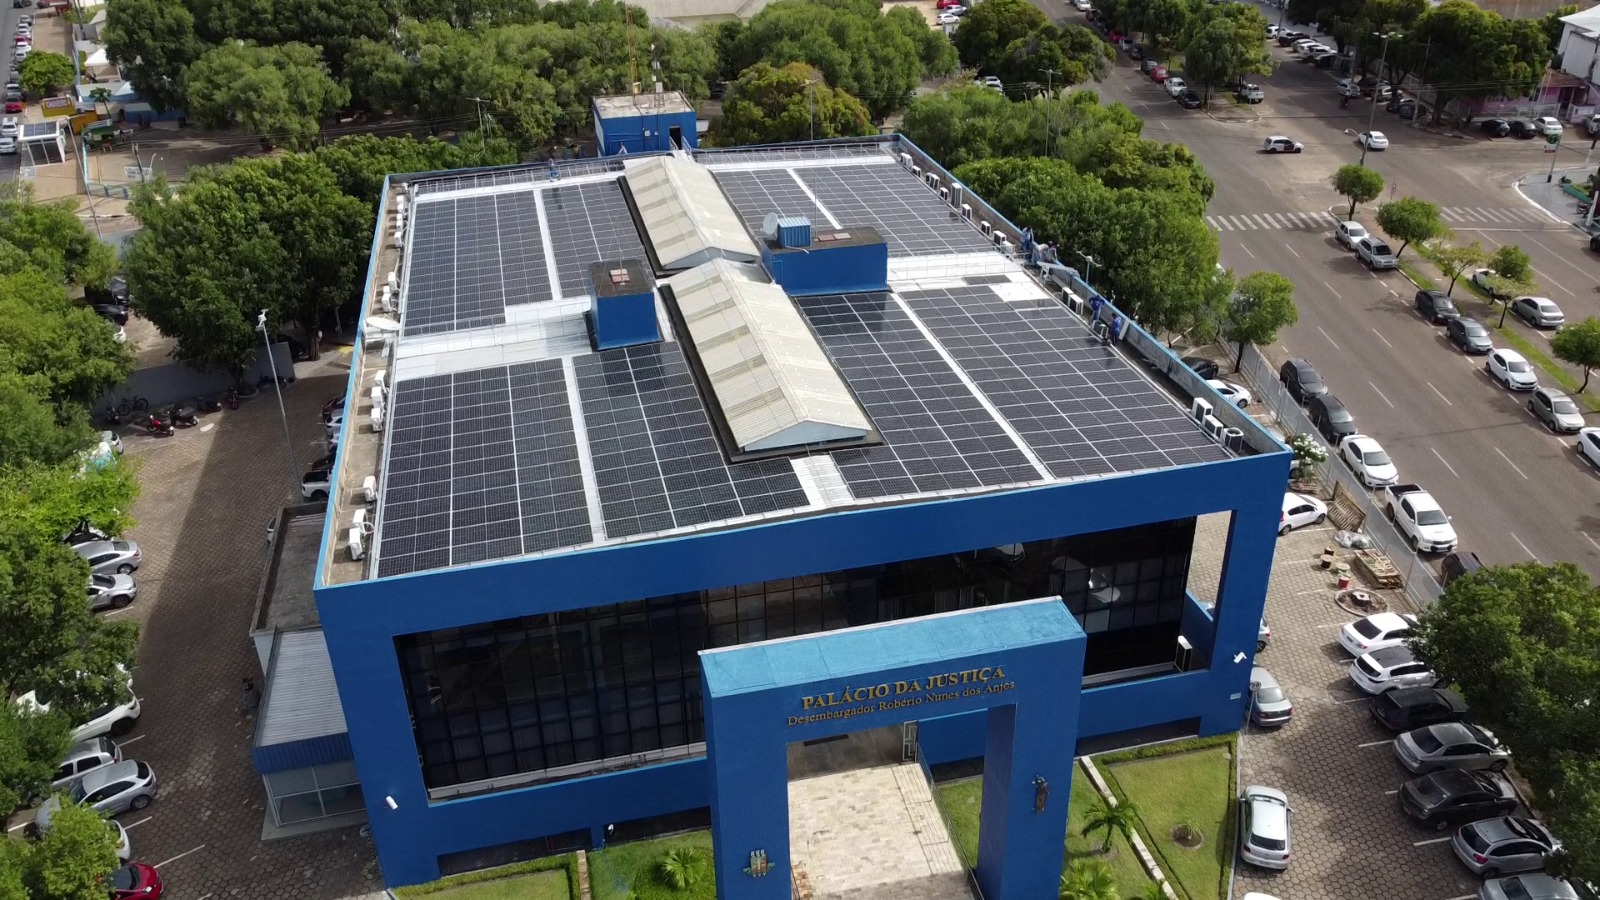 Imagem aérea colorida em formato retangular mostra o teto do Palácio da Justiça  com as placas de energia solar instaladas.